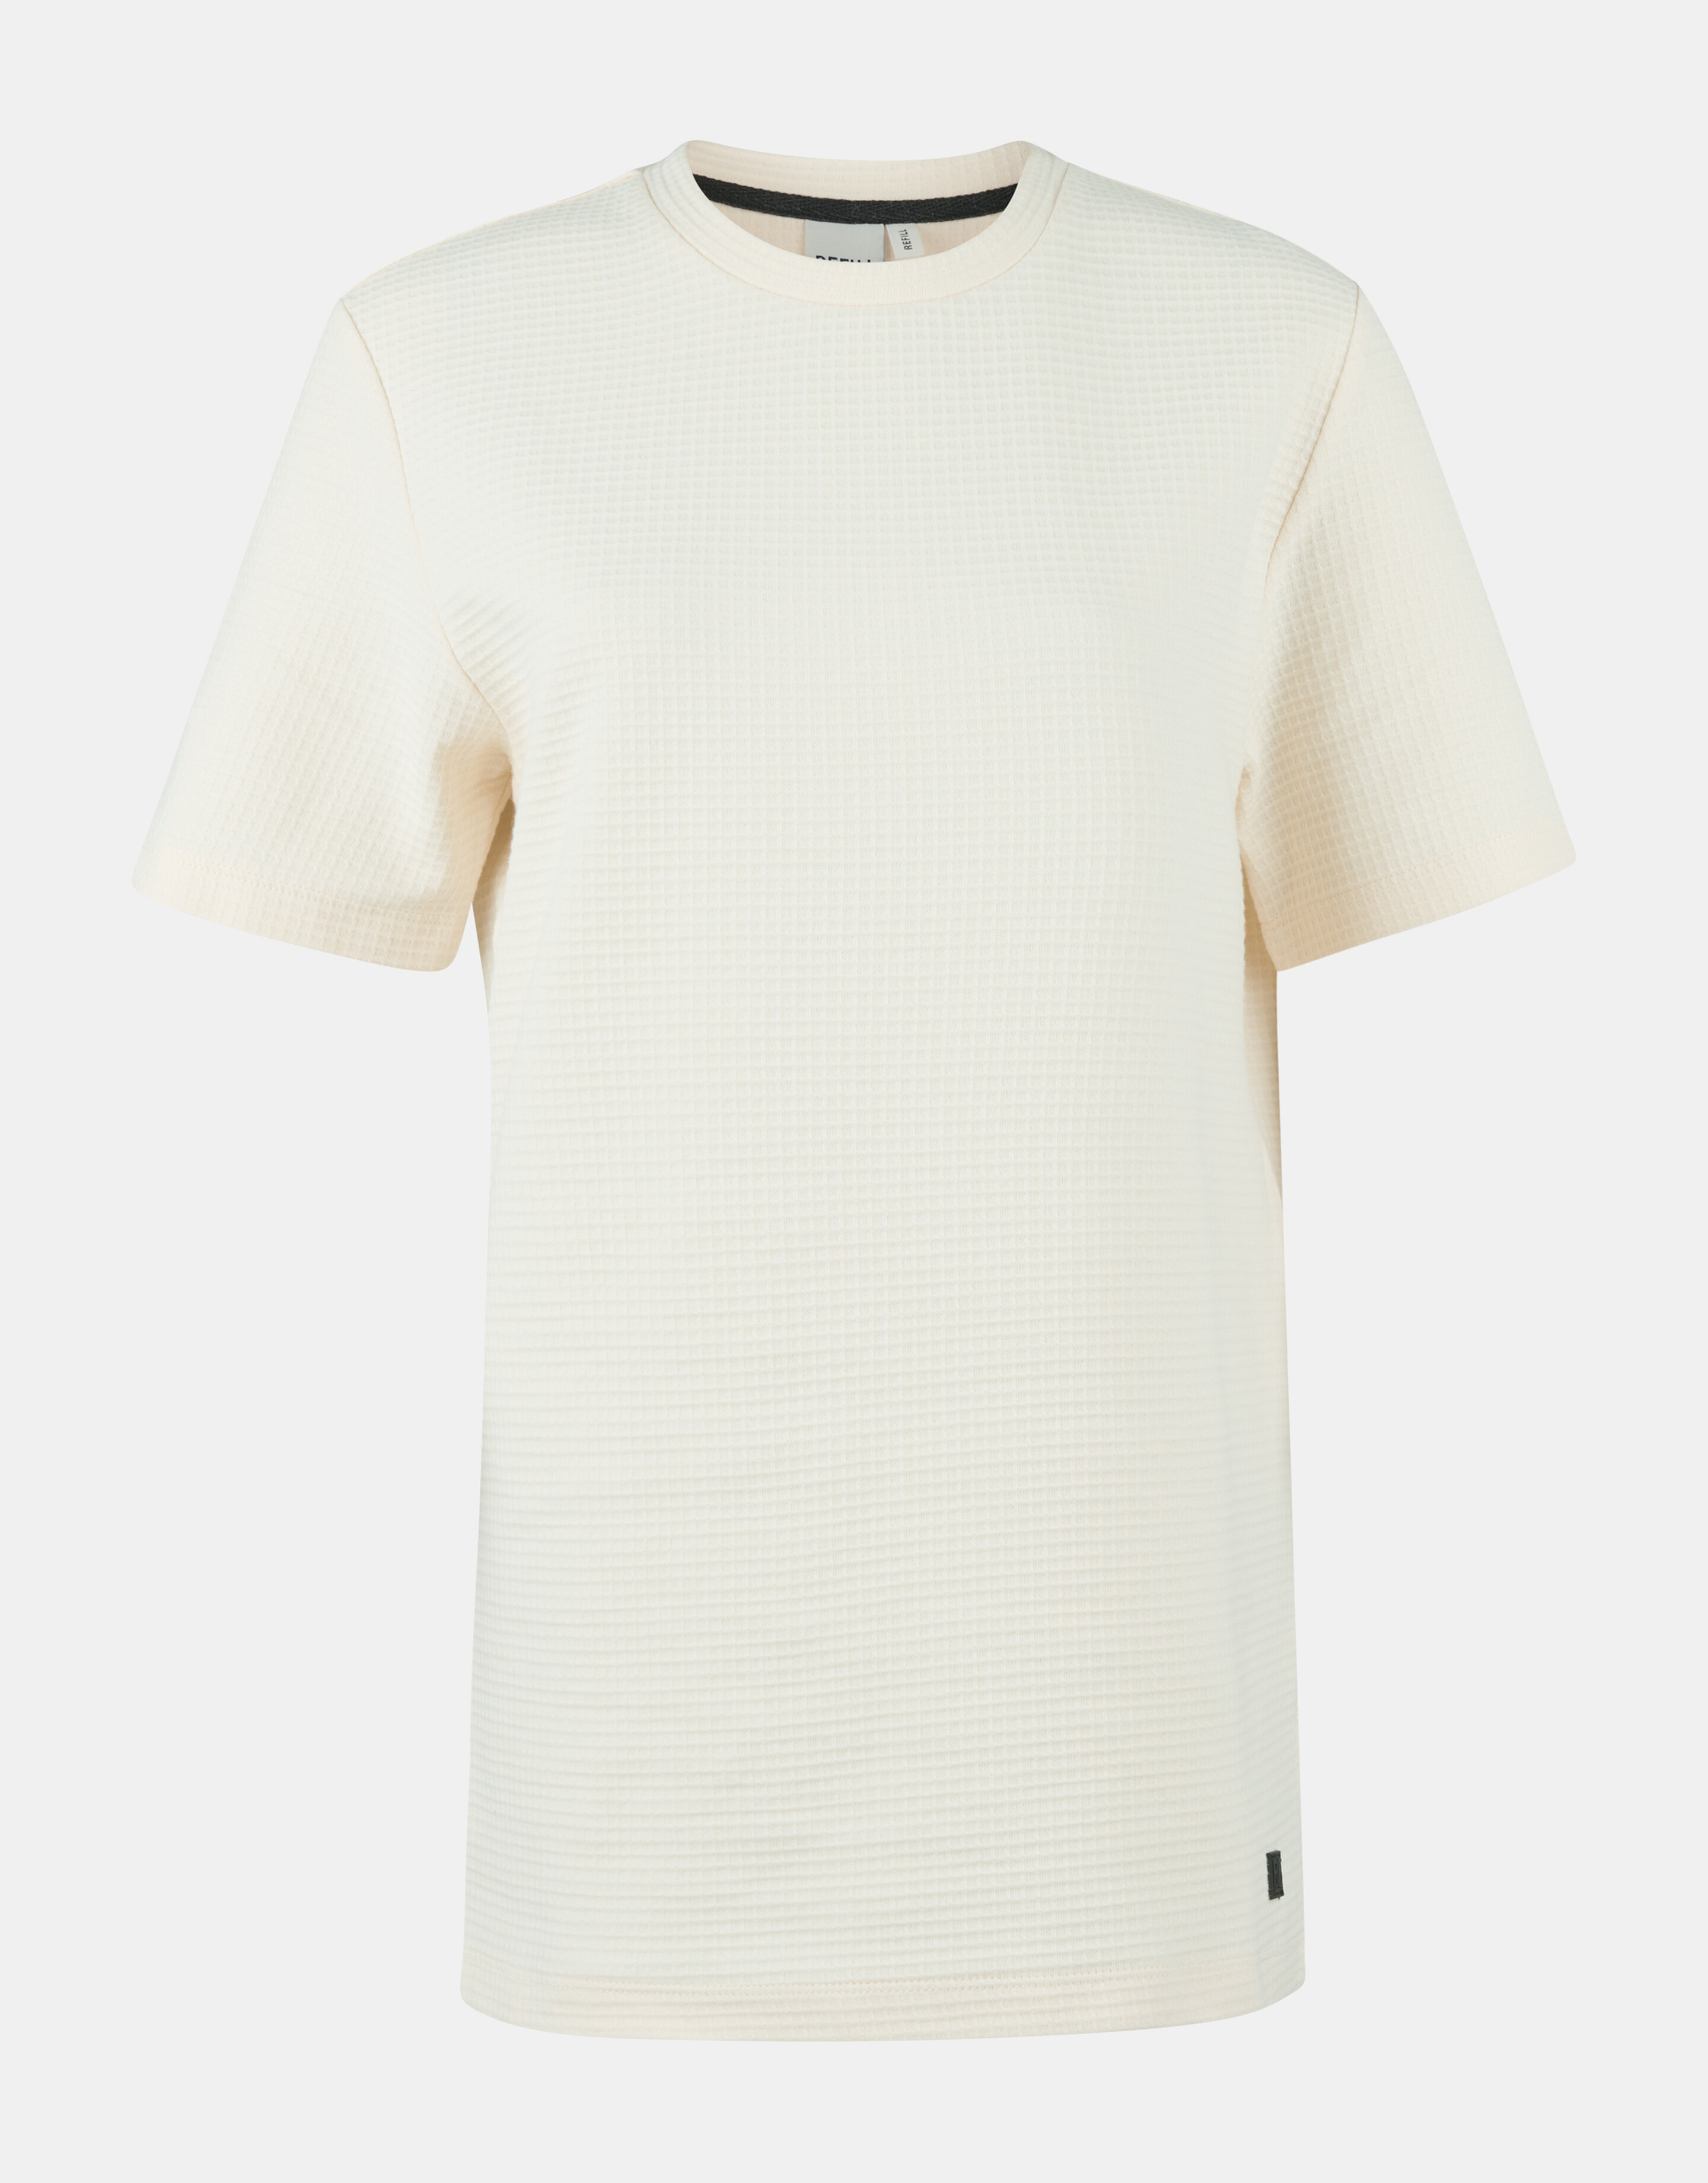 Waffel-T-Shirt REFILL